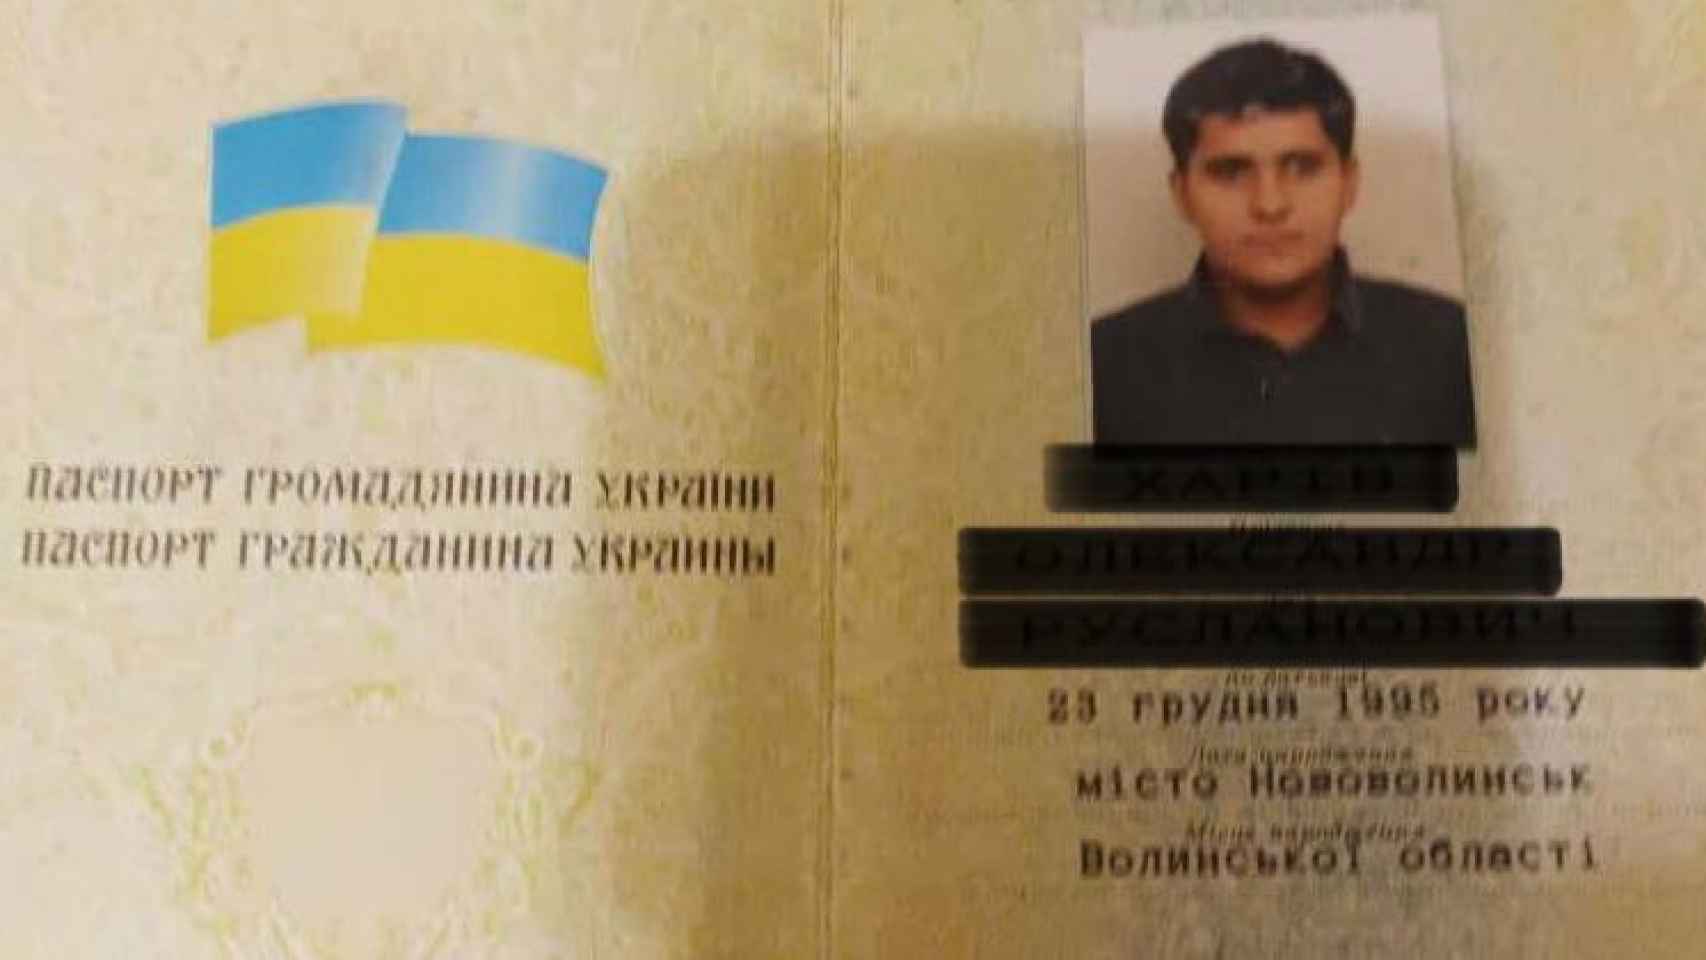 Identificación oficial de Ruslanov.